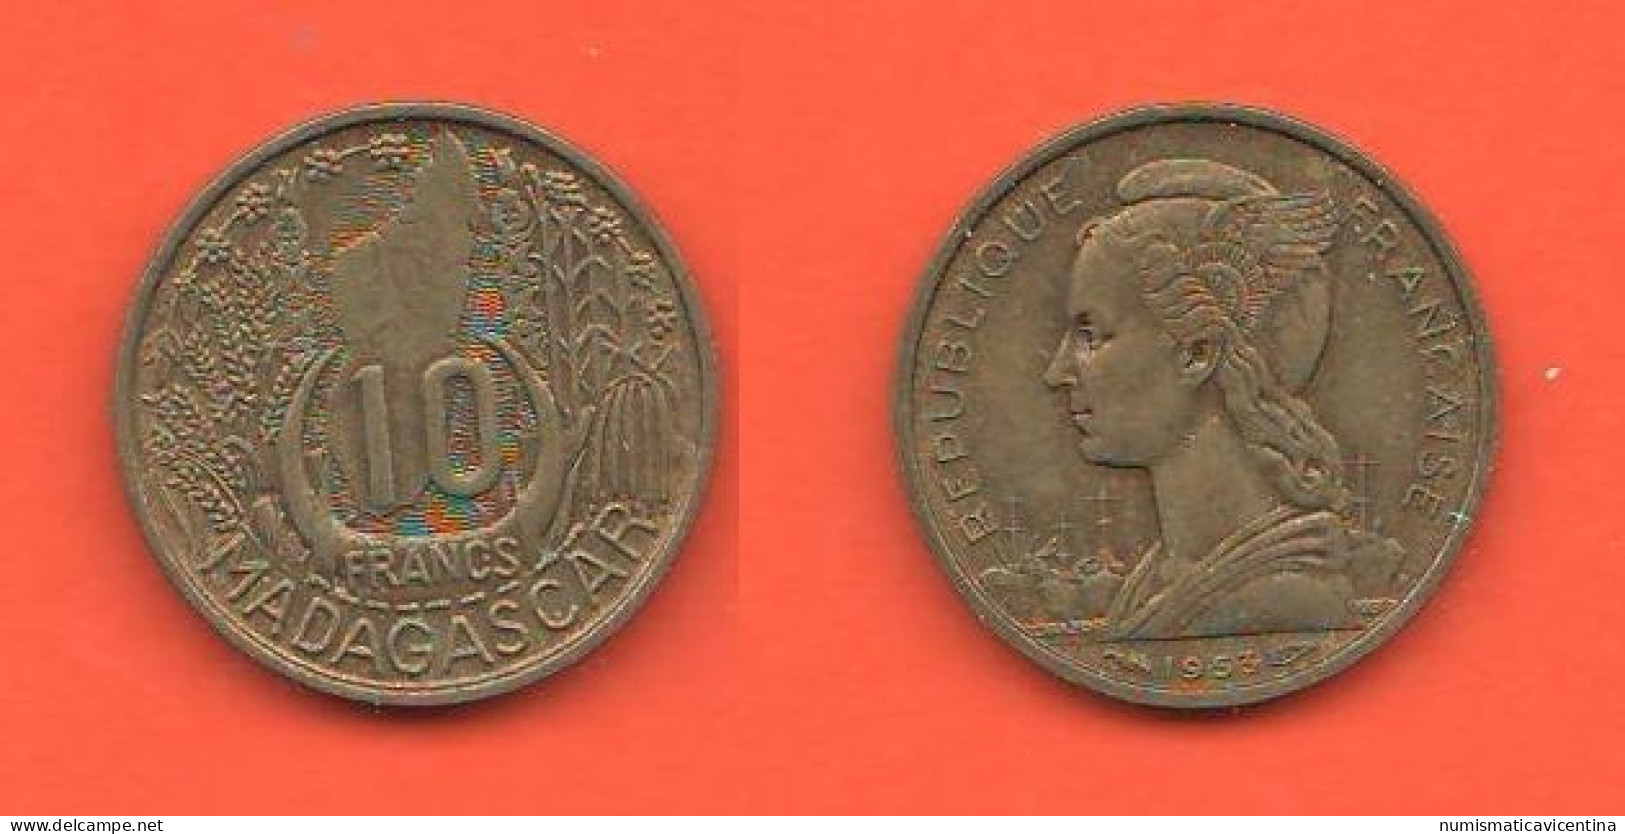 Madagascar 10 Francs 1953 Africa States France France D'outre-mer Bronze Coin - Madagascar